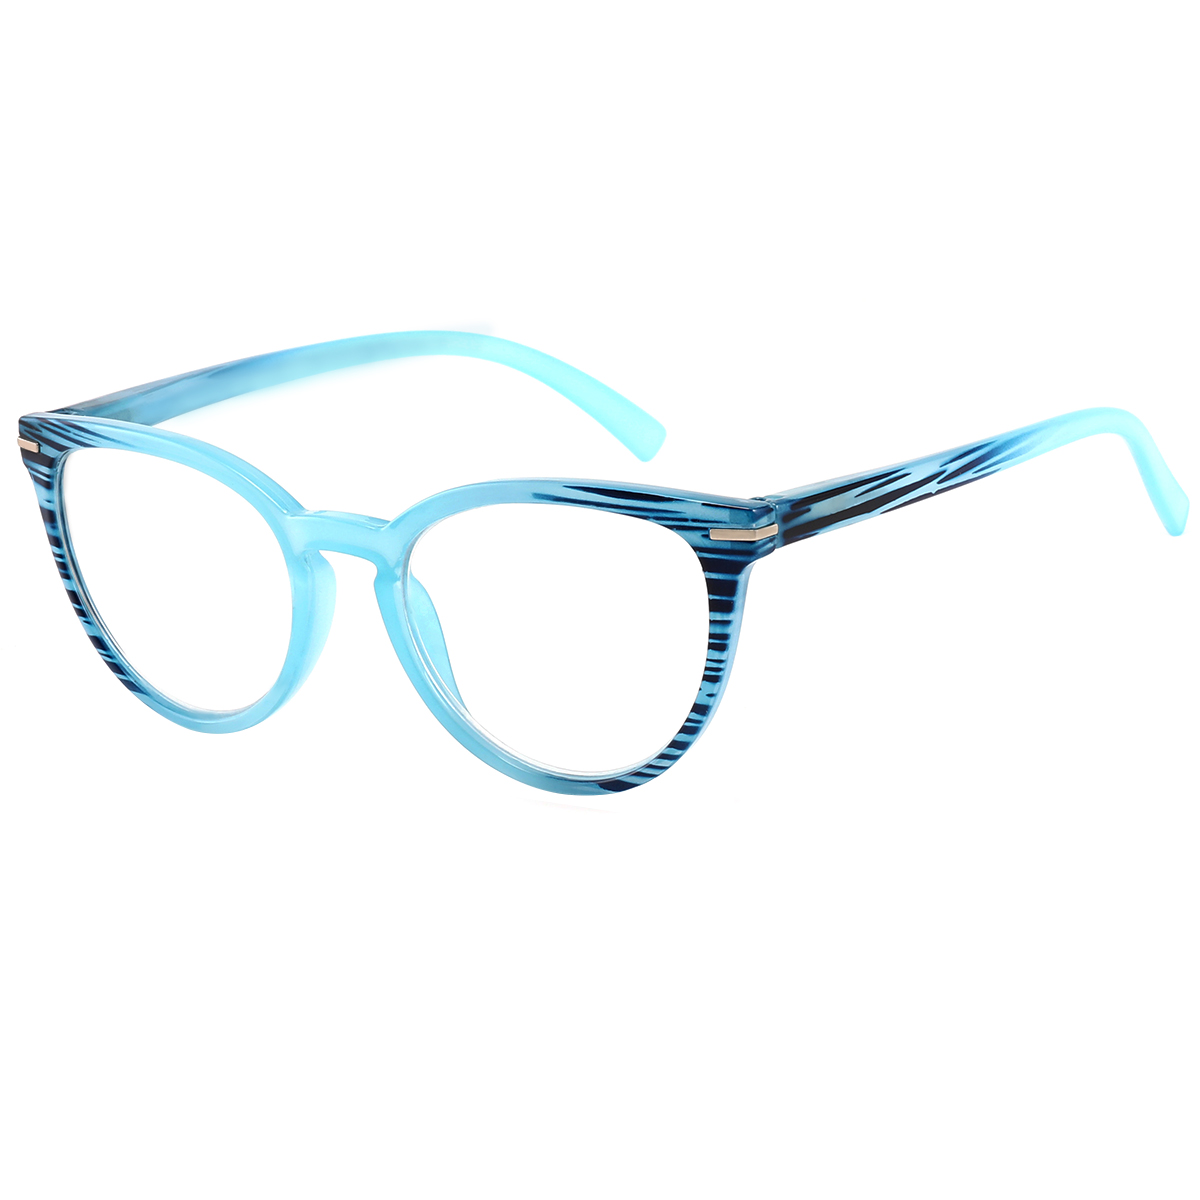 Mogul - Cat-eye Blue Reading Glasses for Women